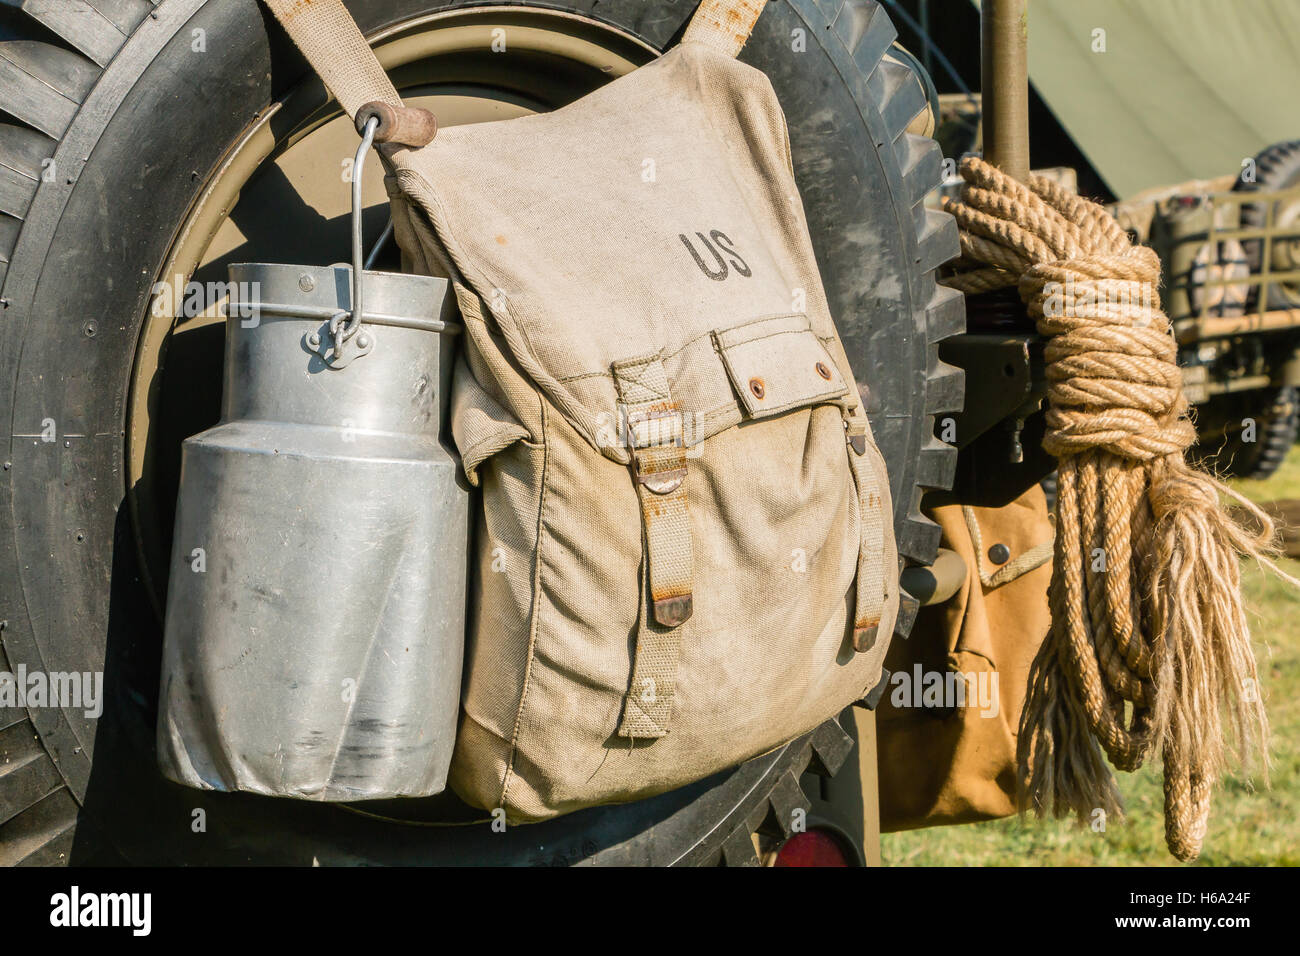 US-Militär Tasche und Benzin Kanister auf einer Jeep-Modeausstellung  Stockfotografie - Alamy